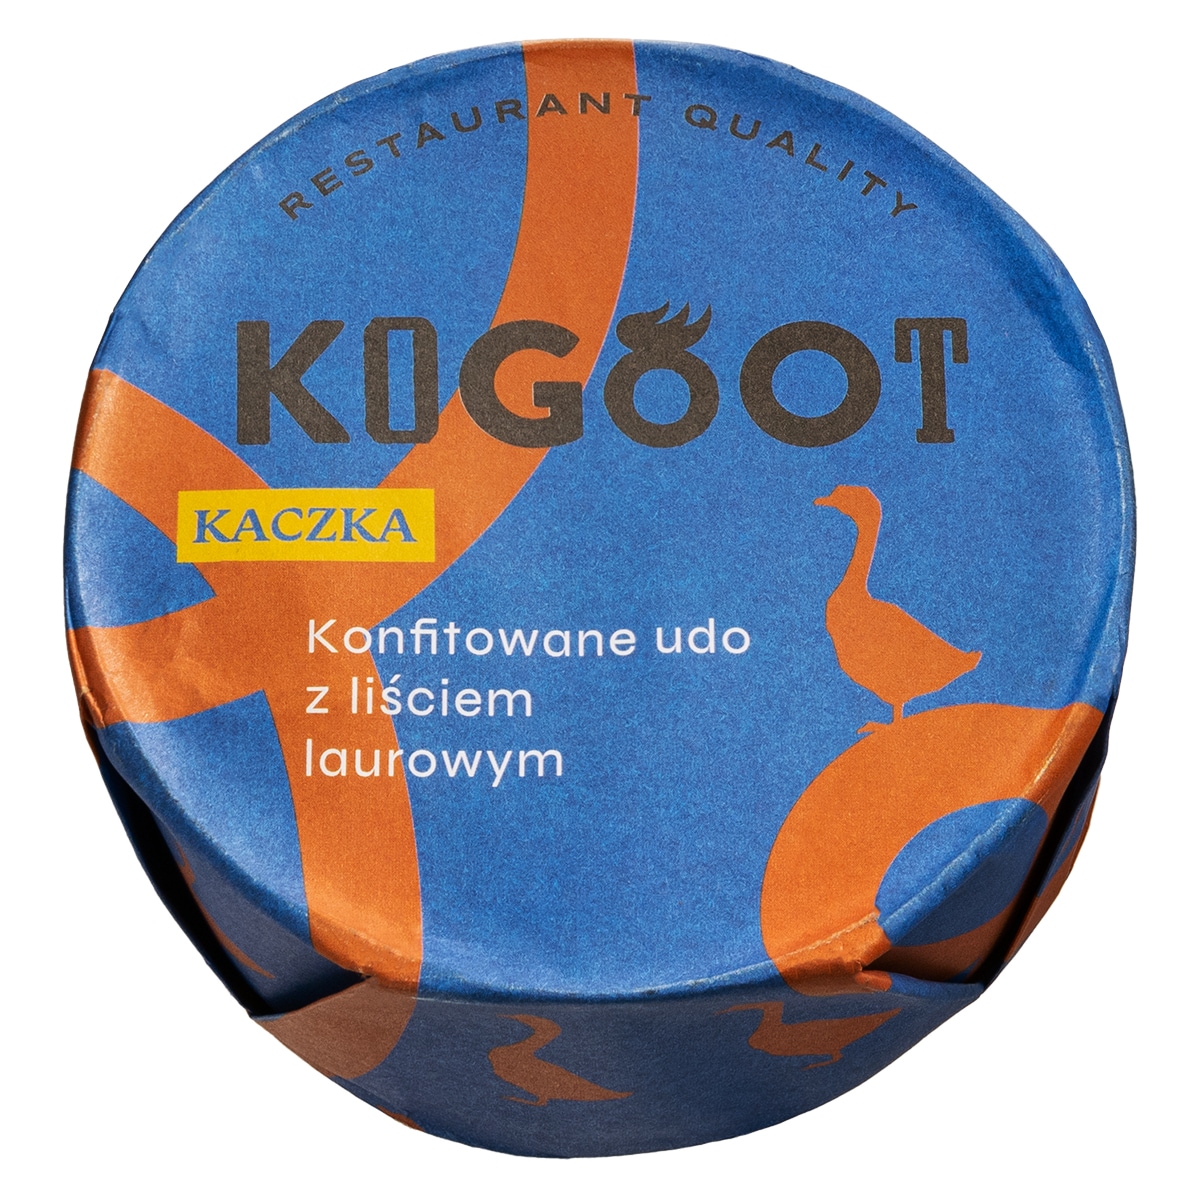 Консервовані продукти Kogoot - Стегенця качині конфі з лавровим листом 300 г